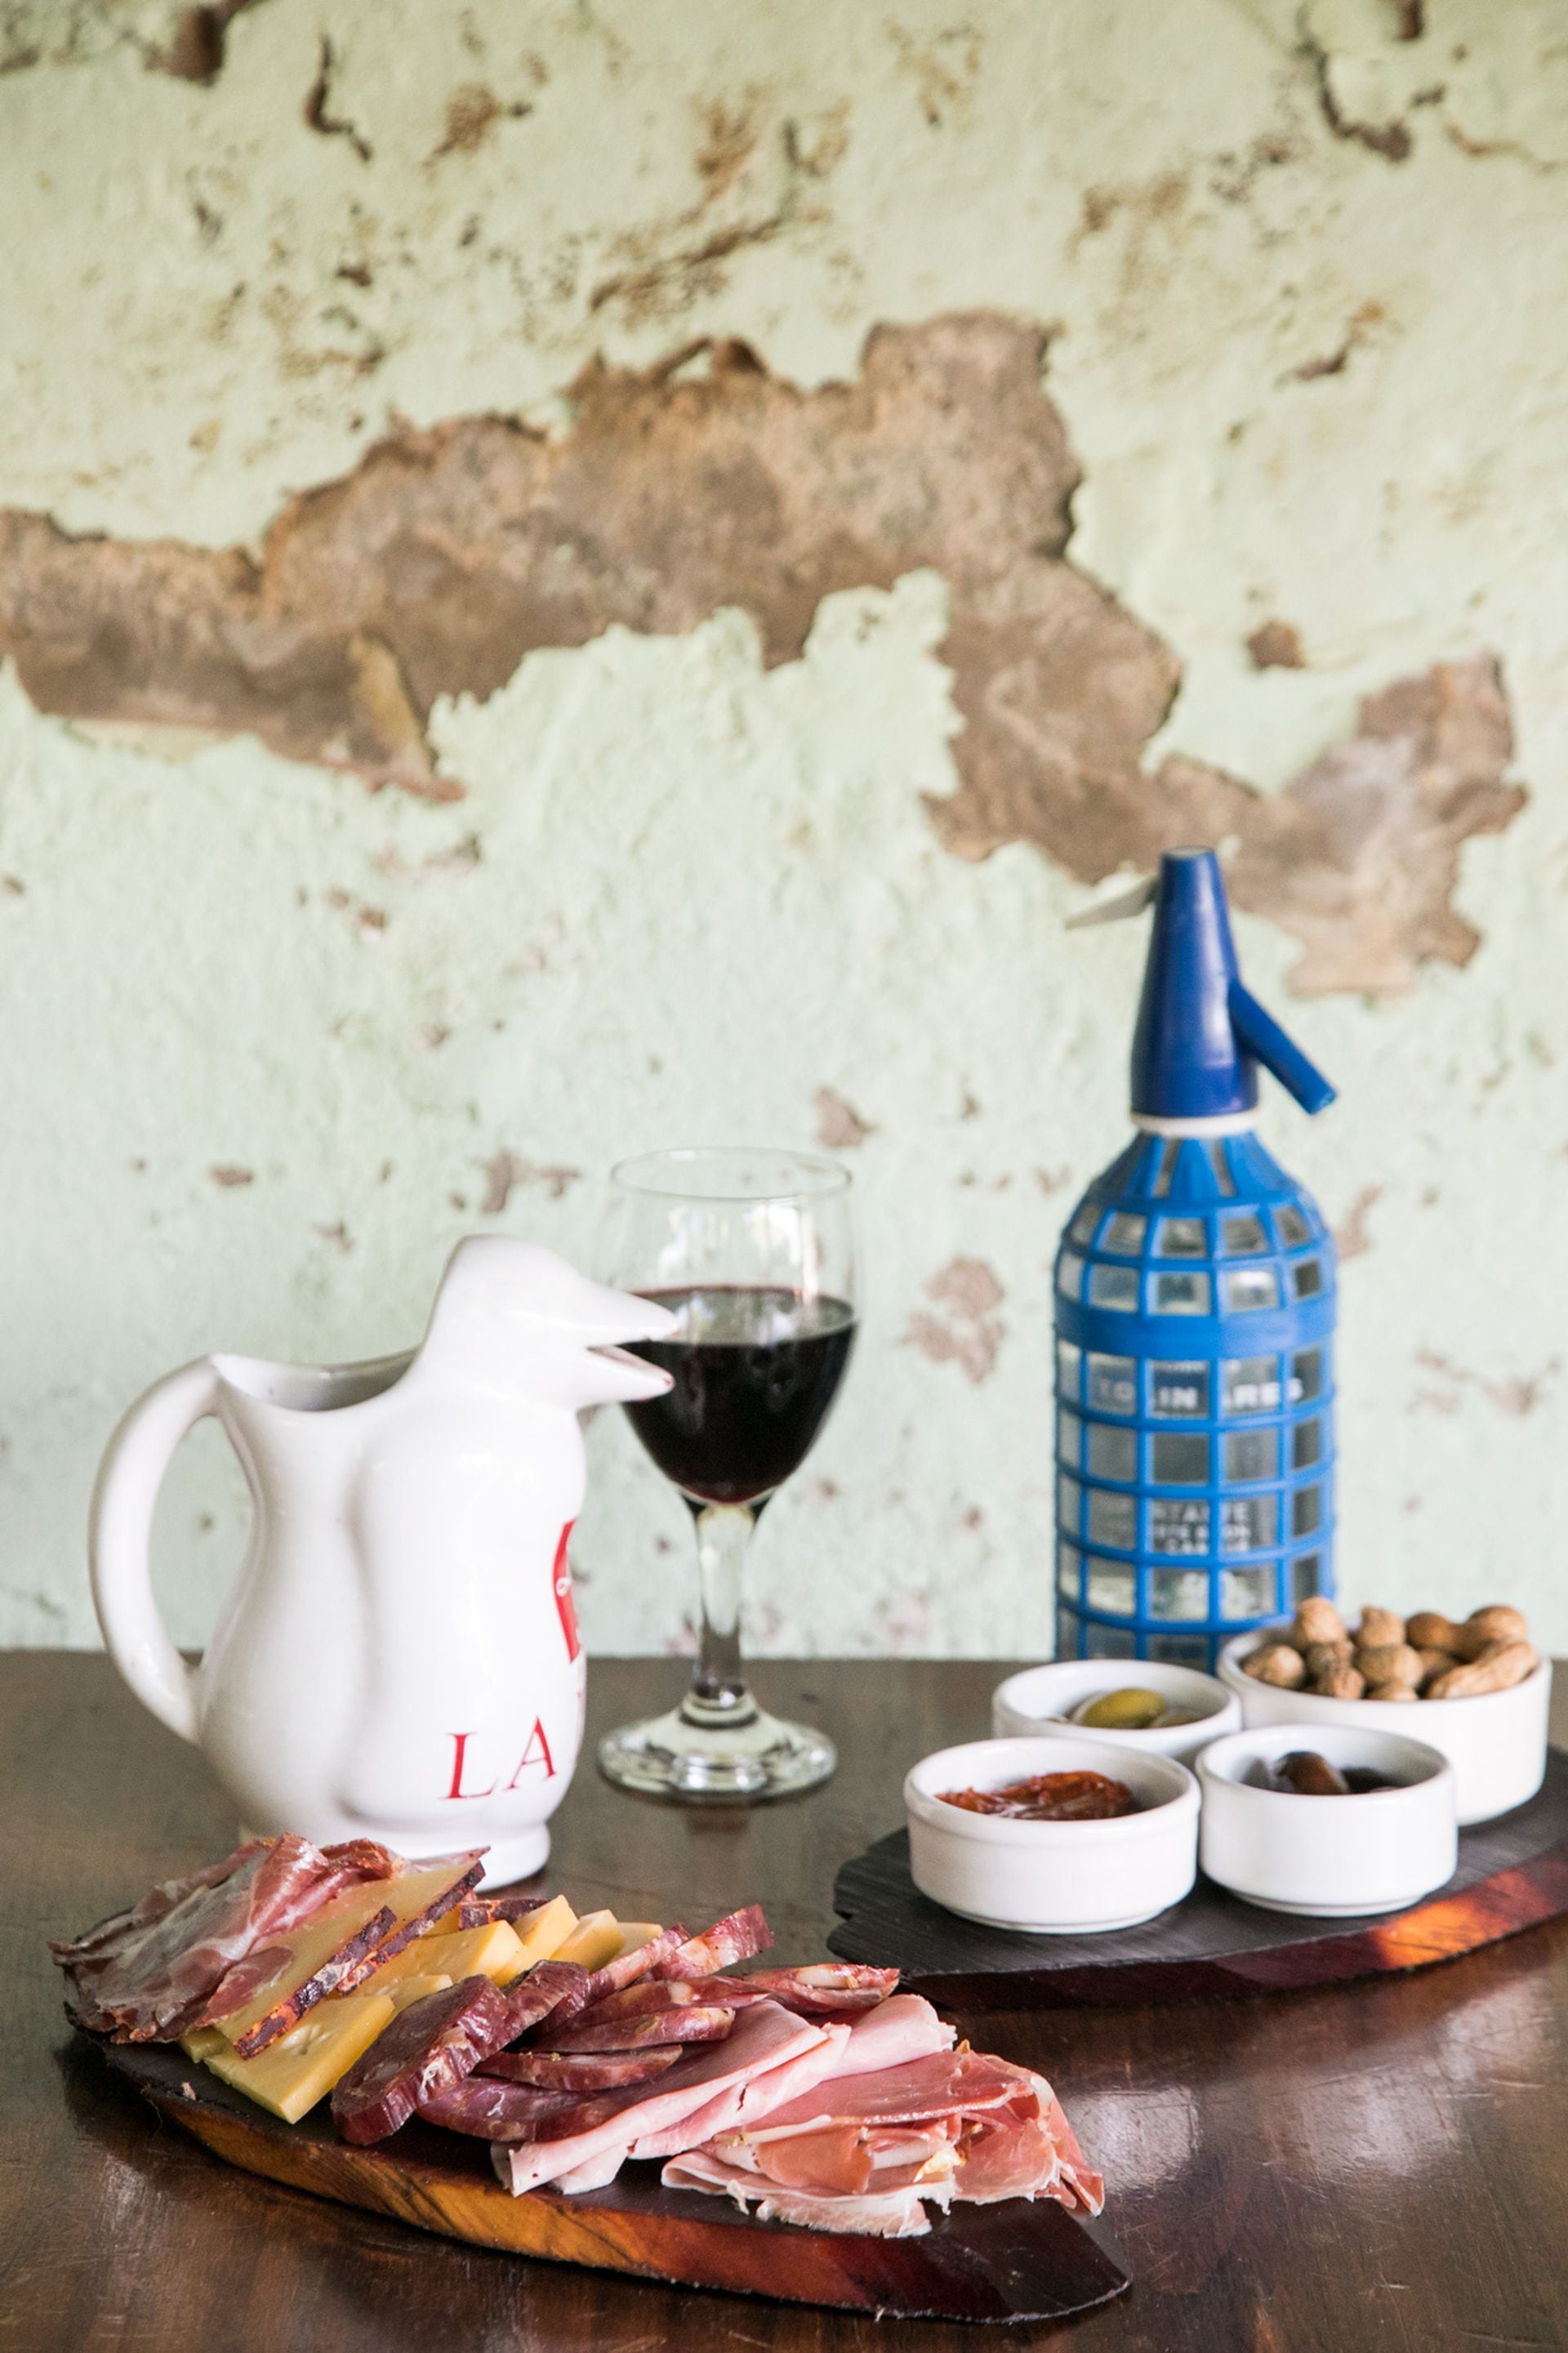 En El Palenque, el vino se sirve en jarra pingüino.